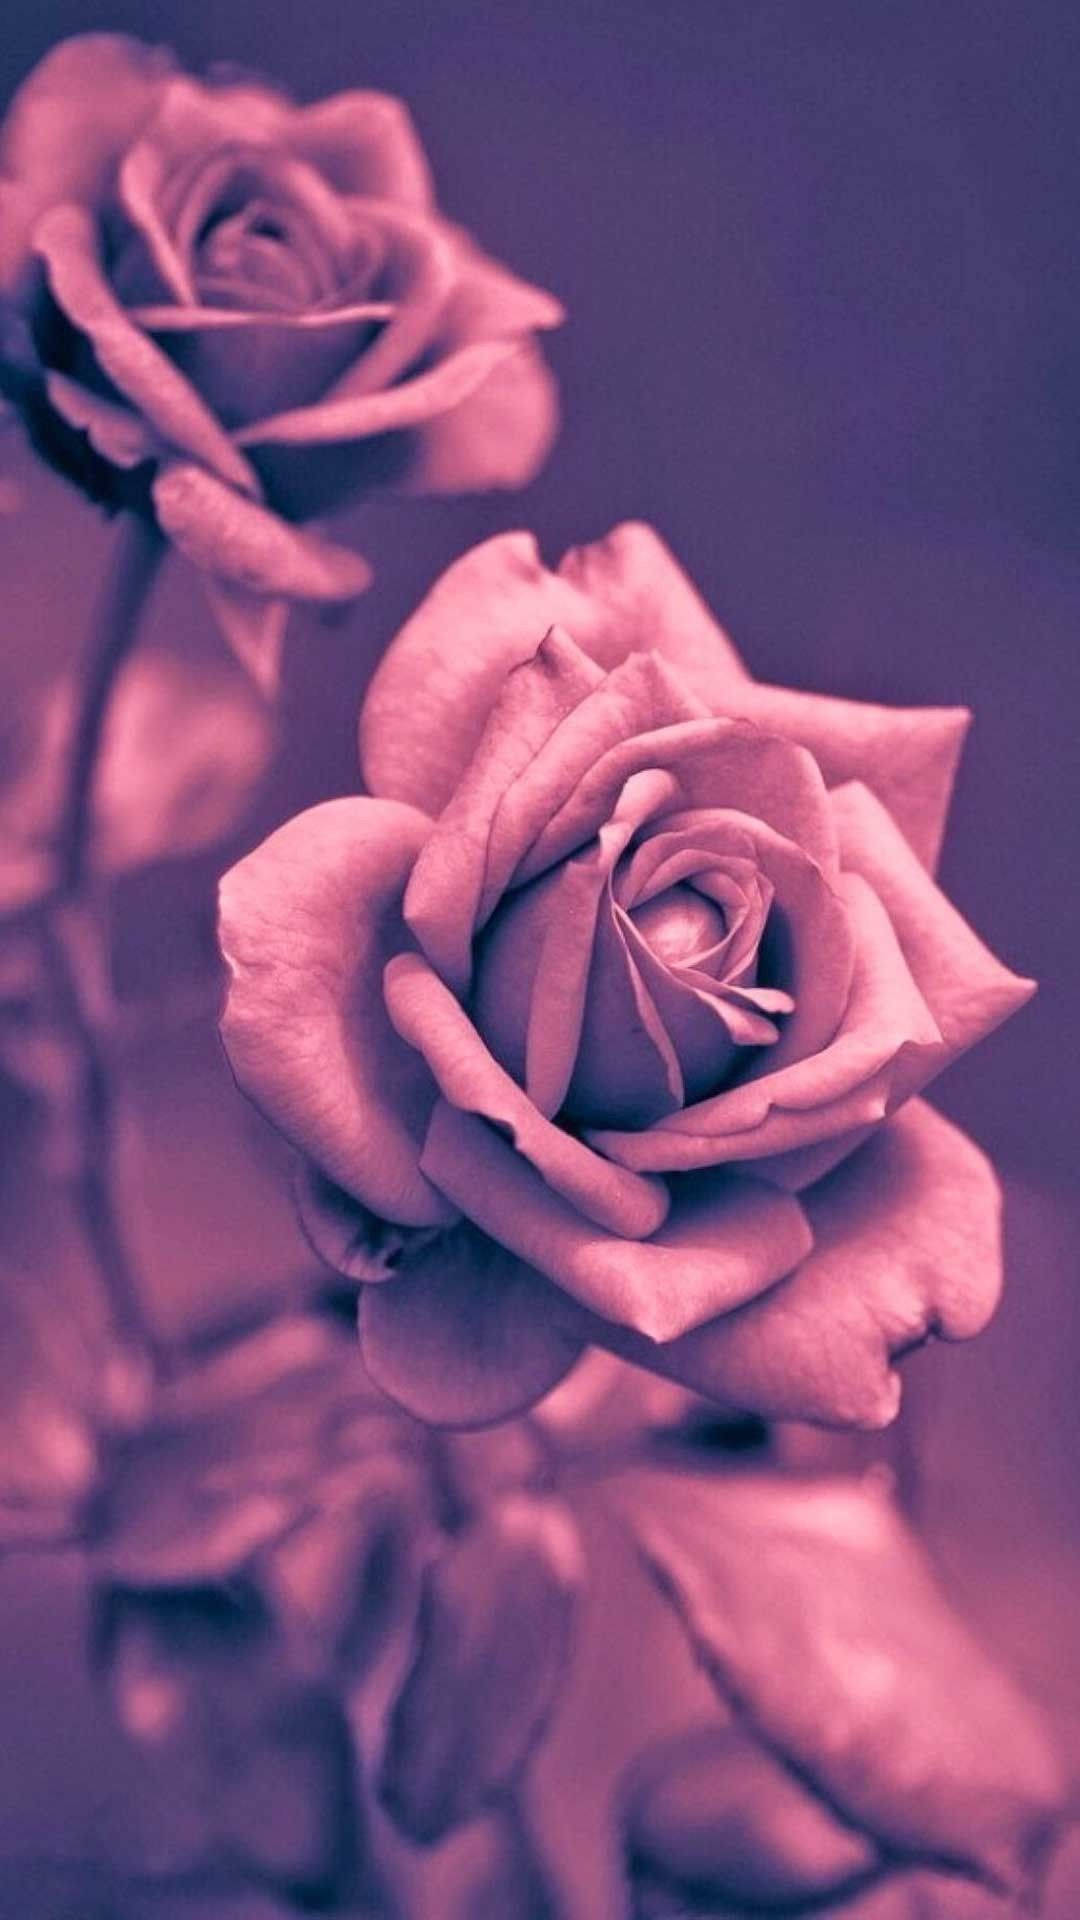 Pretty Monochrome Roses Image Wallpaper